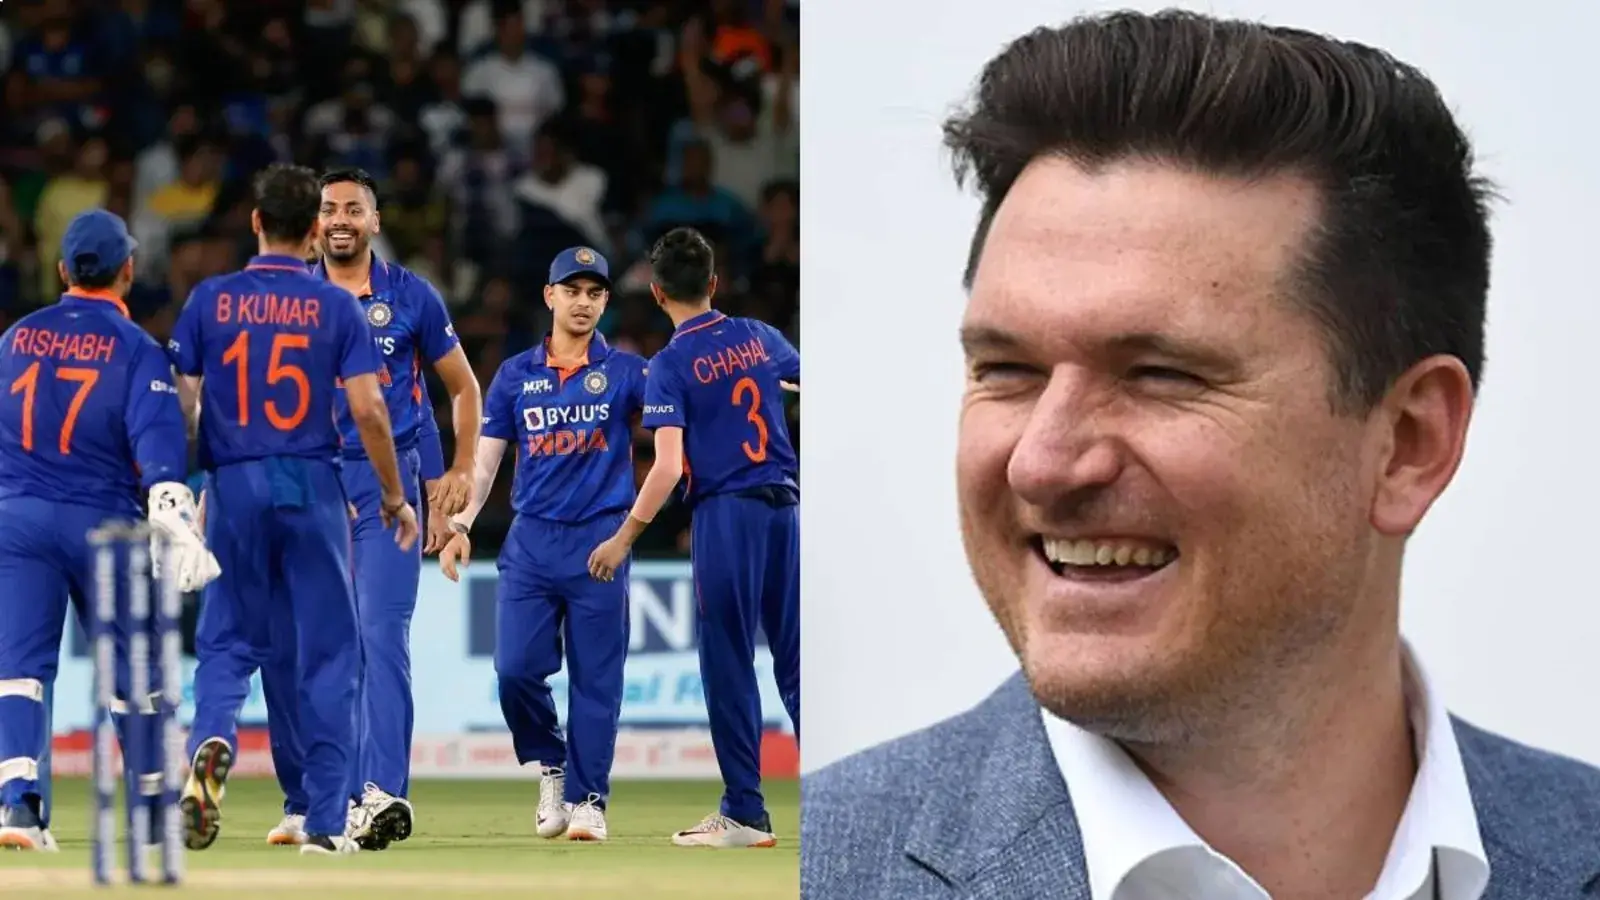  'वह एक्स-फैक्टर इंडिया की आवश्यकता है': स्मिथ ने टी 20 विश्व कप के लिए 2 अपूरणीय खिलाड़ियों को चुना |  क्रिकेट
